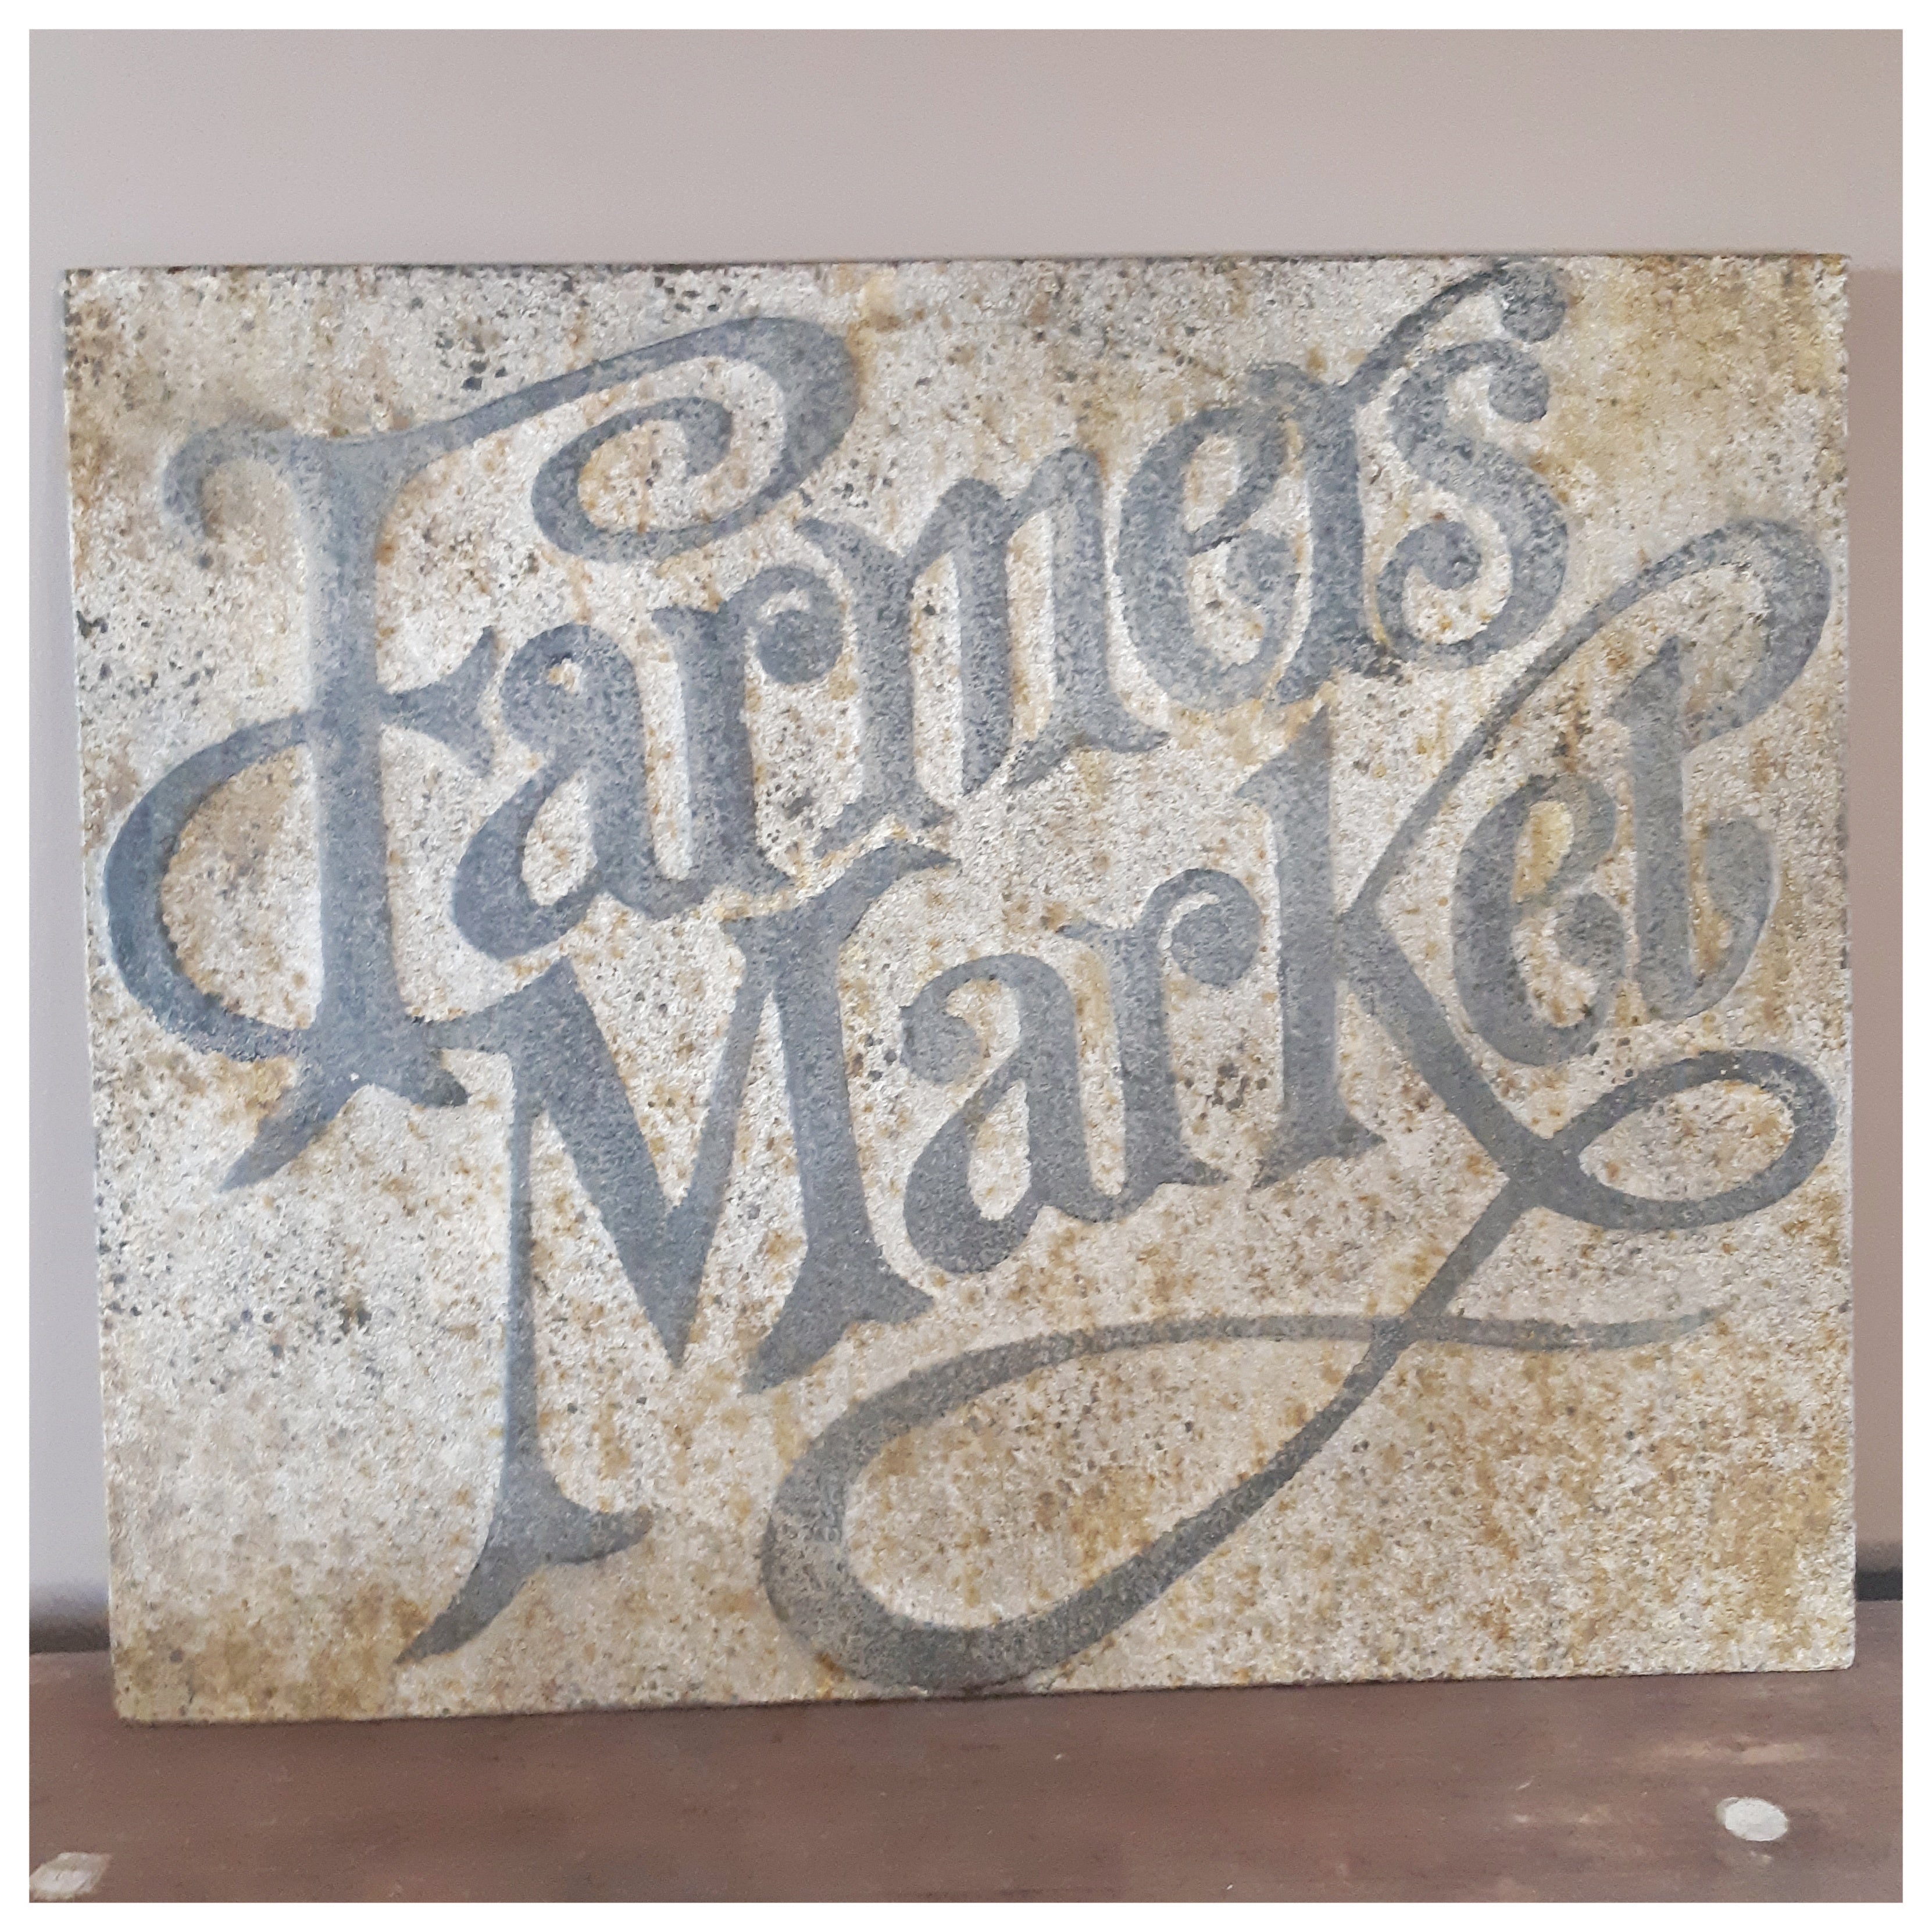 Farmer's market Vintage sign